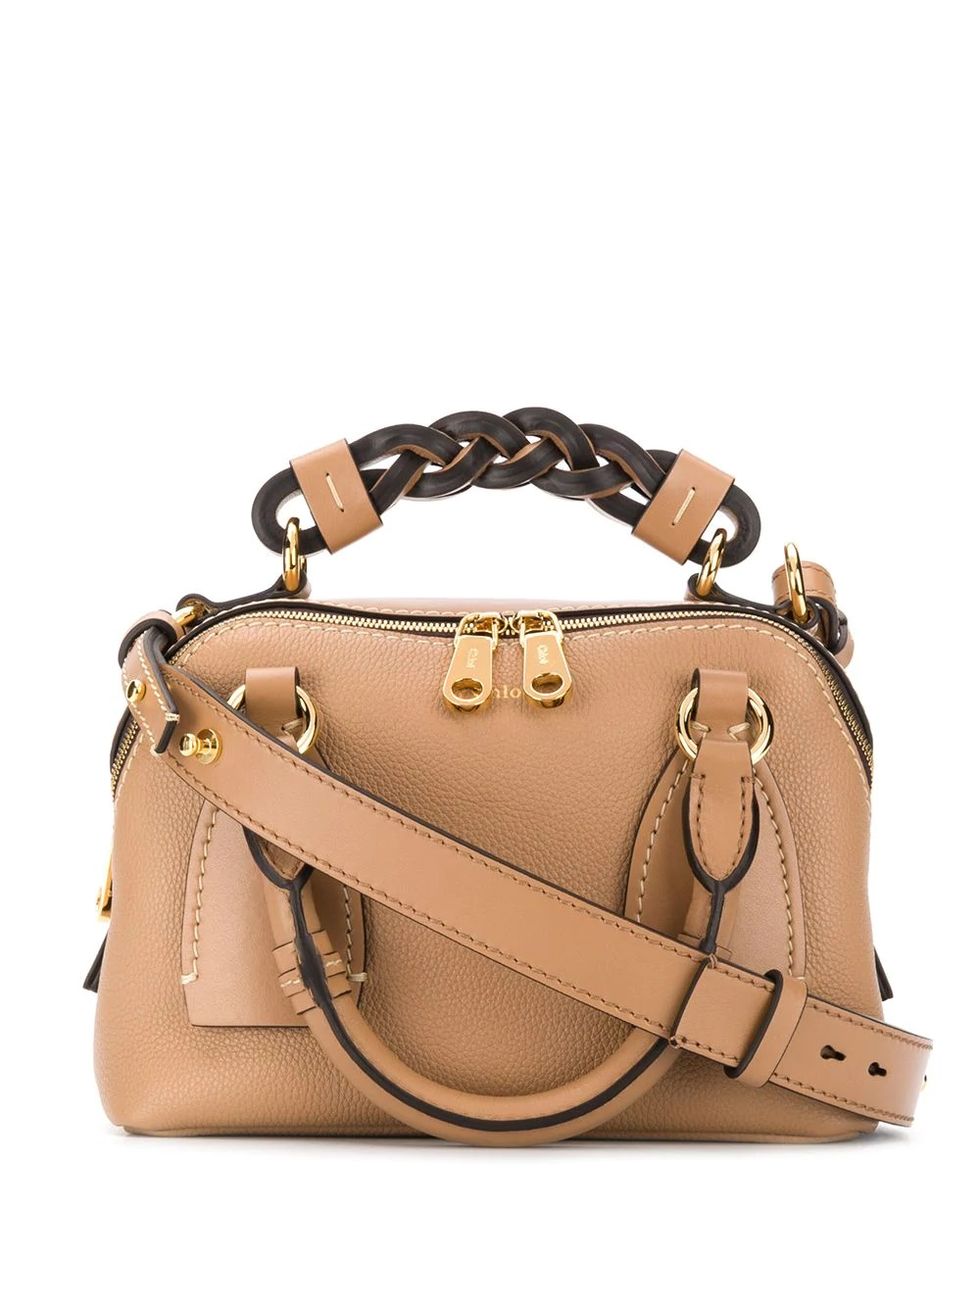 Handbag, Bag, Fashion accessory, Shoulder bag, Leather, Brown, Tan, Beige, Material property, Satchel, 